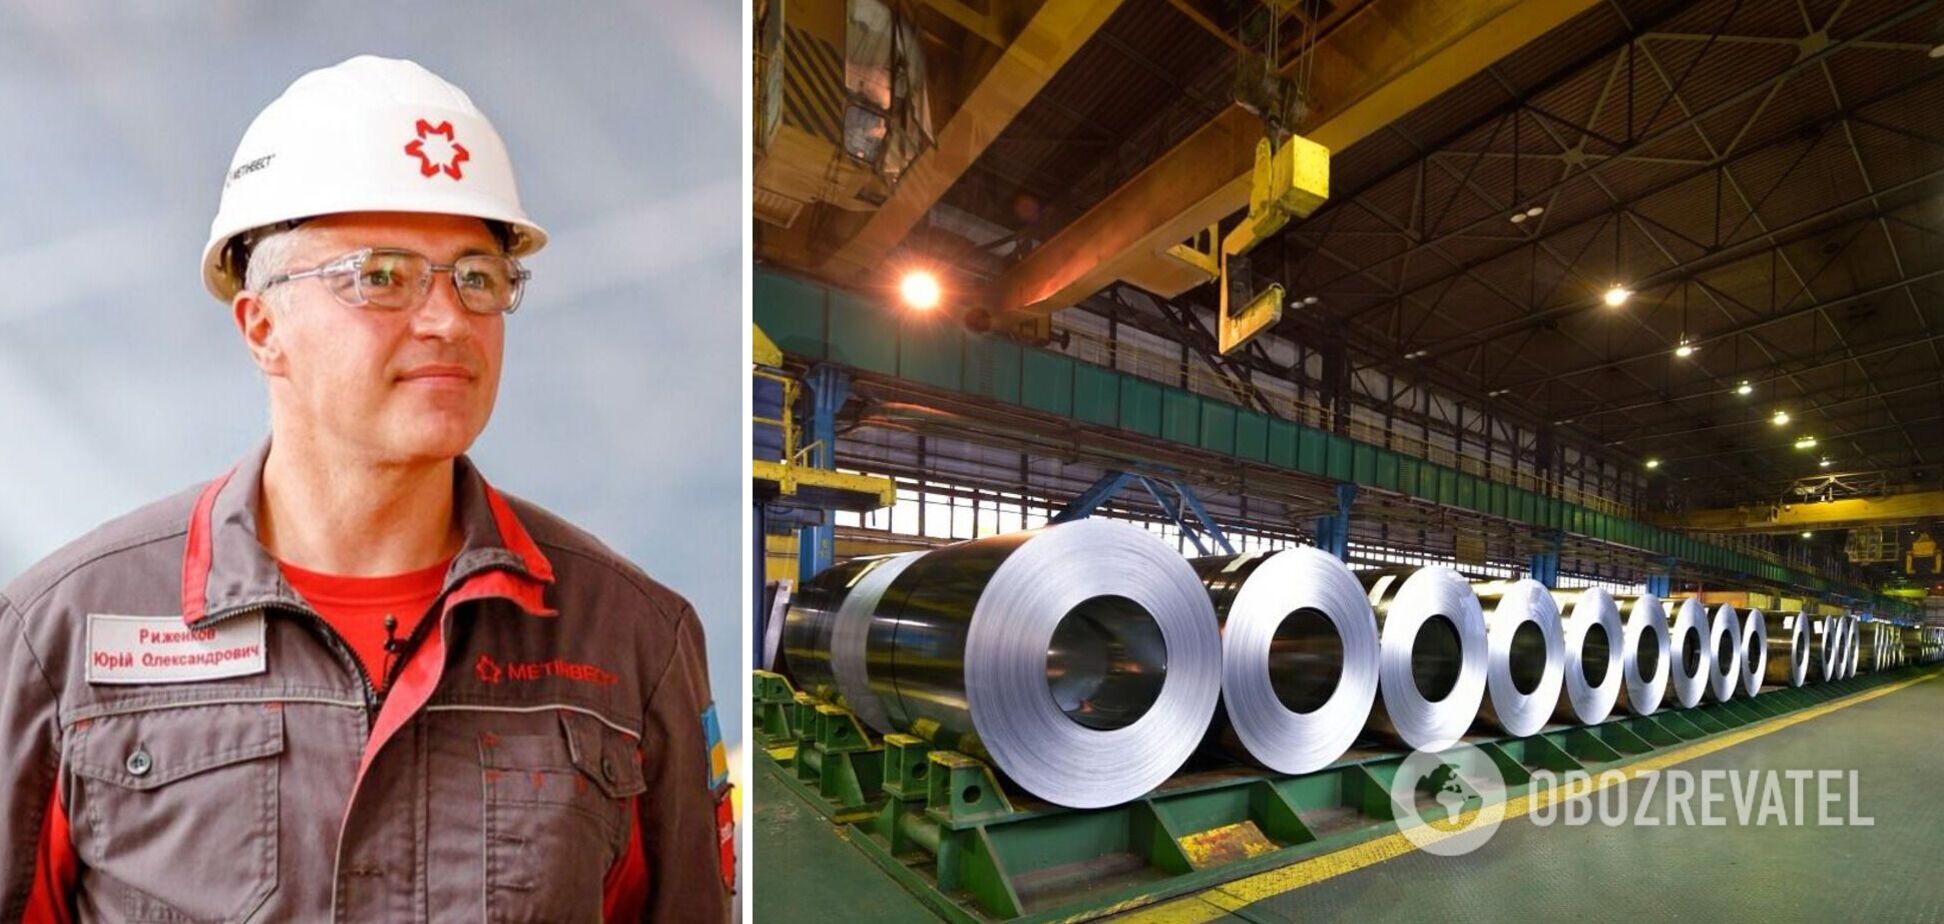 Метинвест будет инвестировать в развитие логистического центра в Польше для продажи украинской металлопродукции, – Рыженков